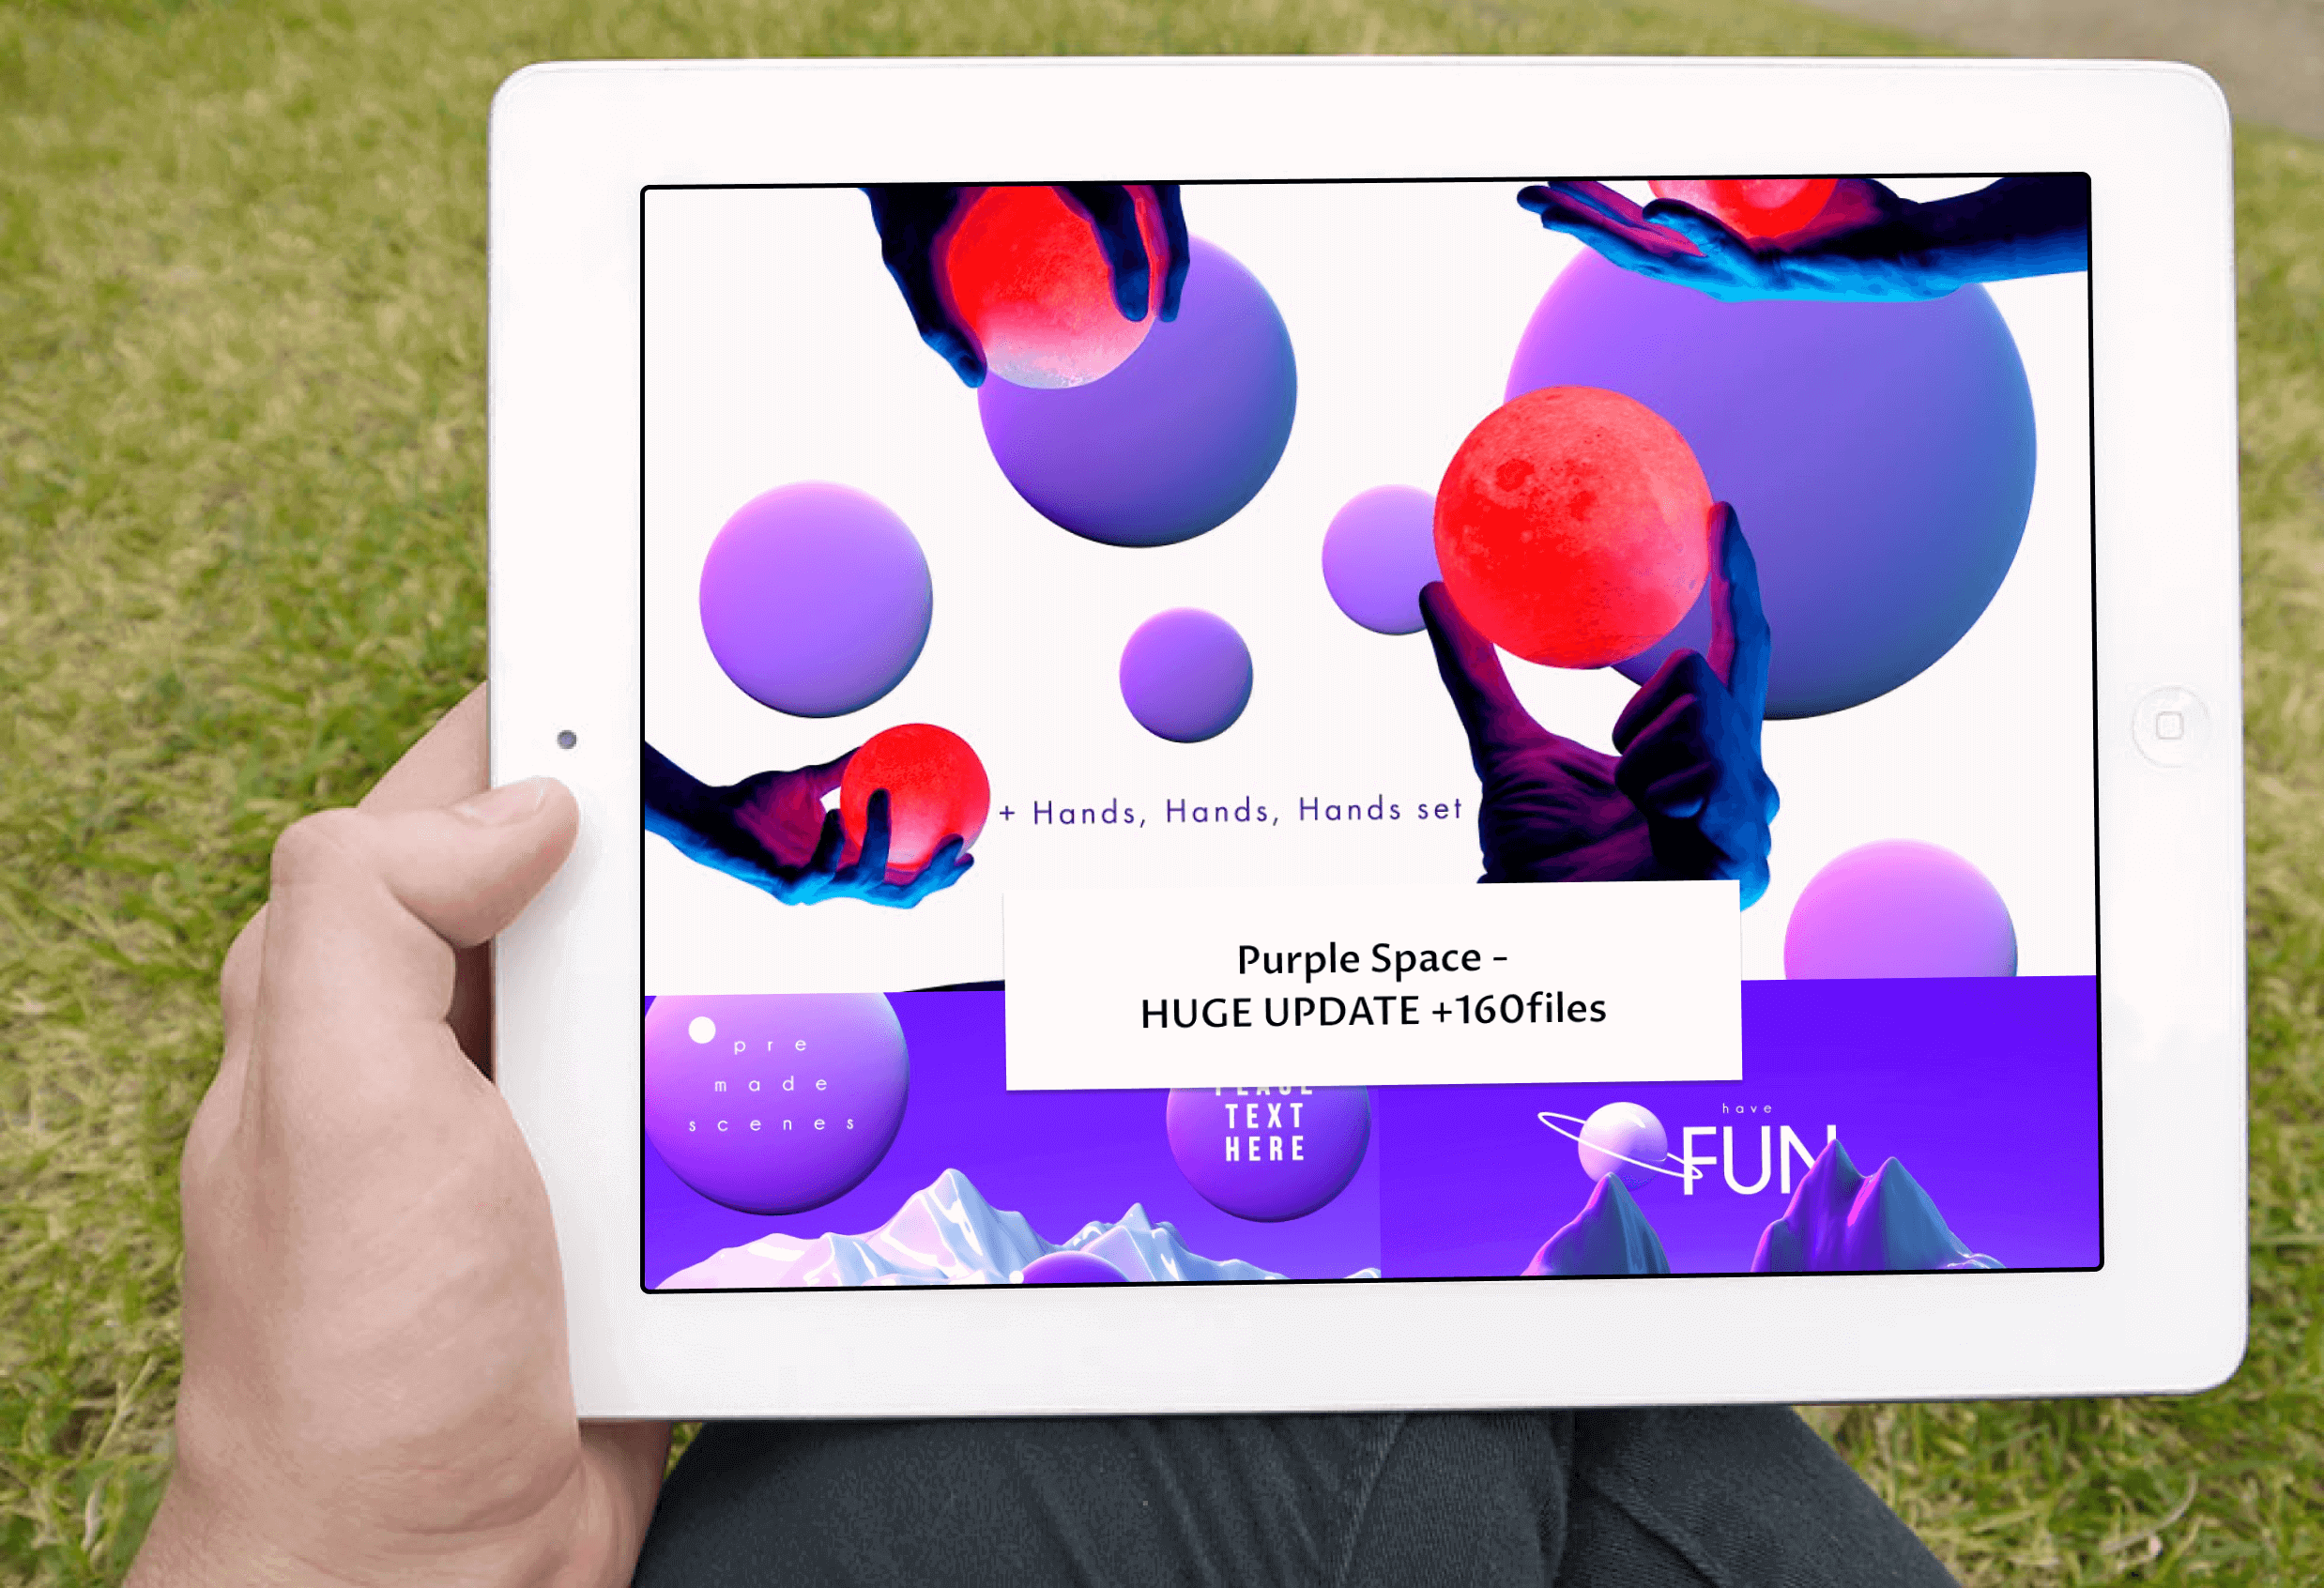 Purple Space Huge Update on Tablet.